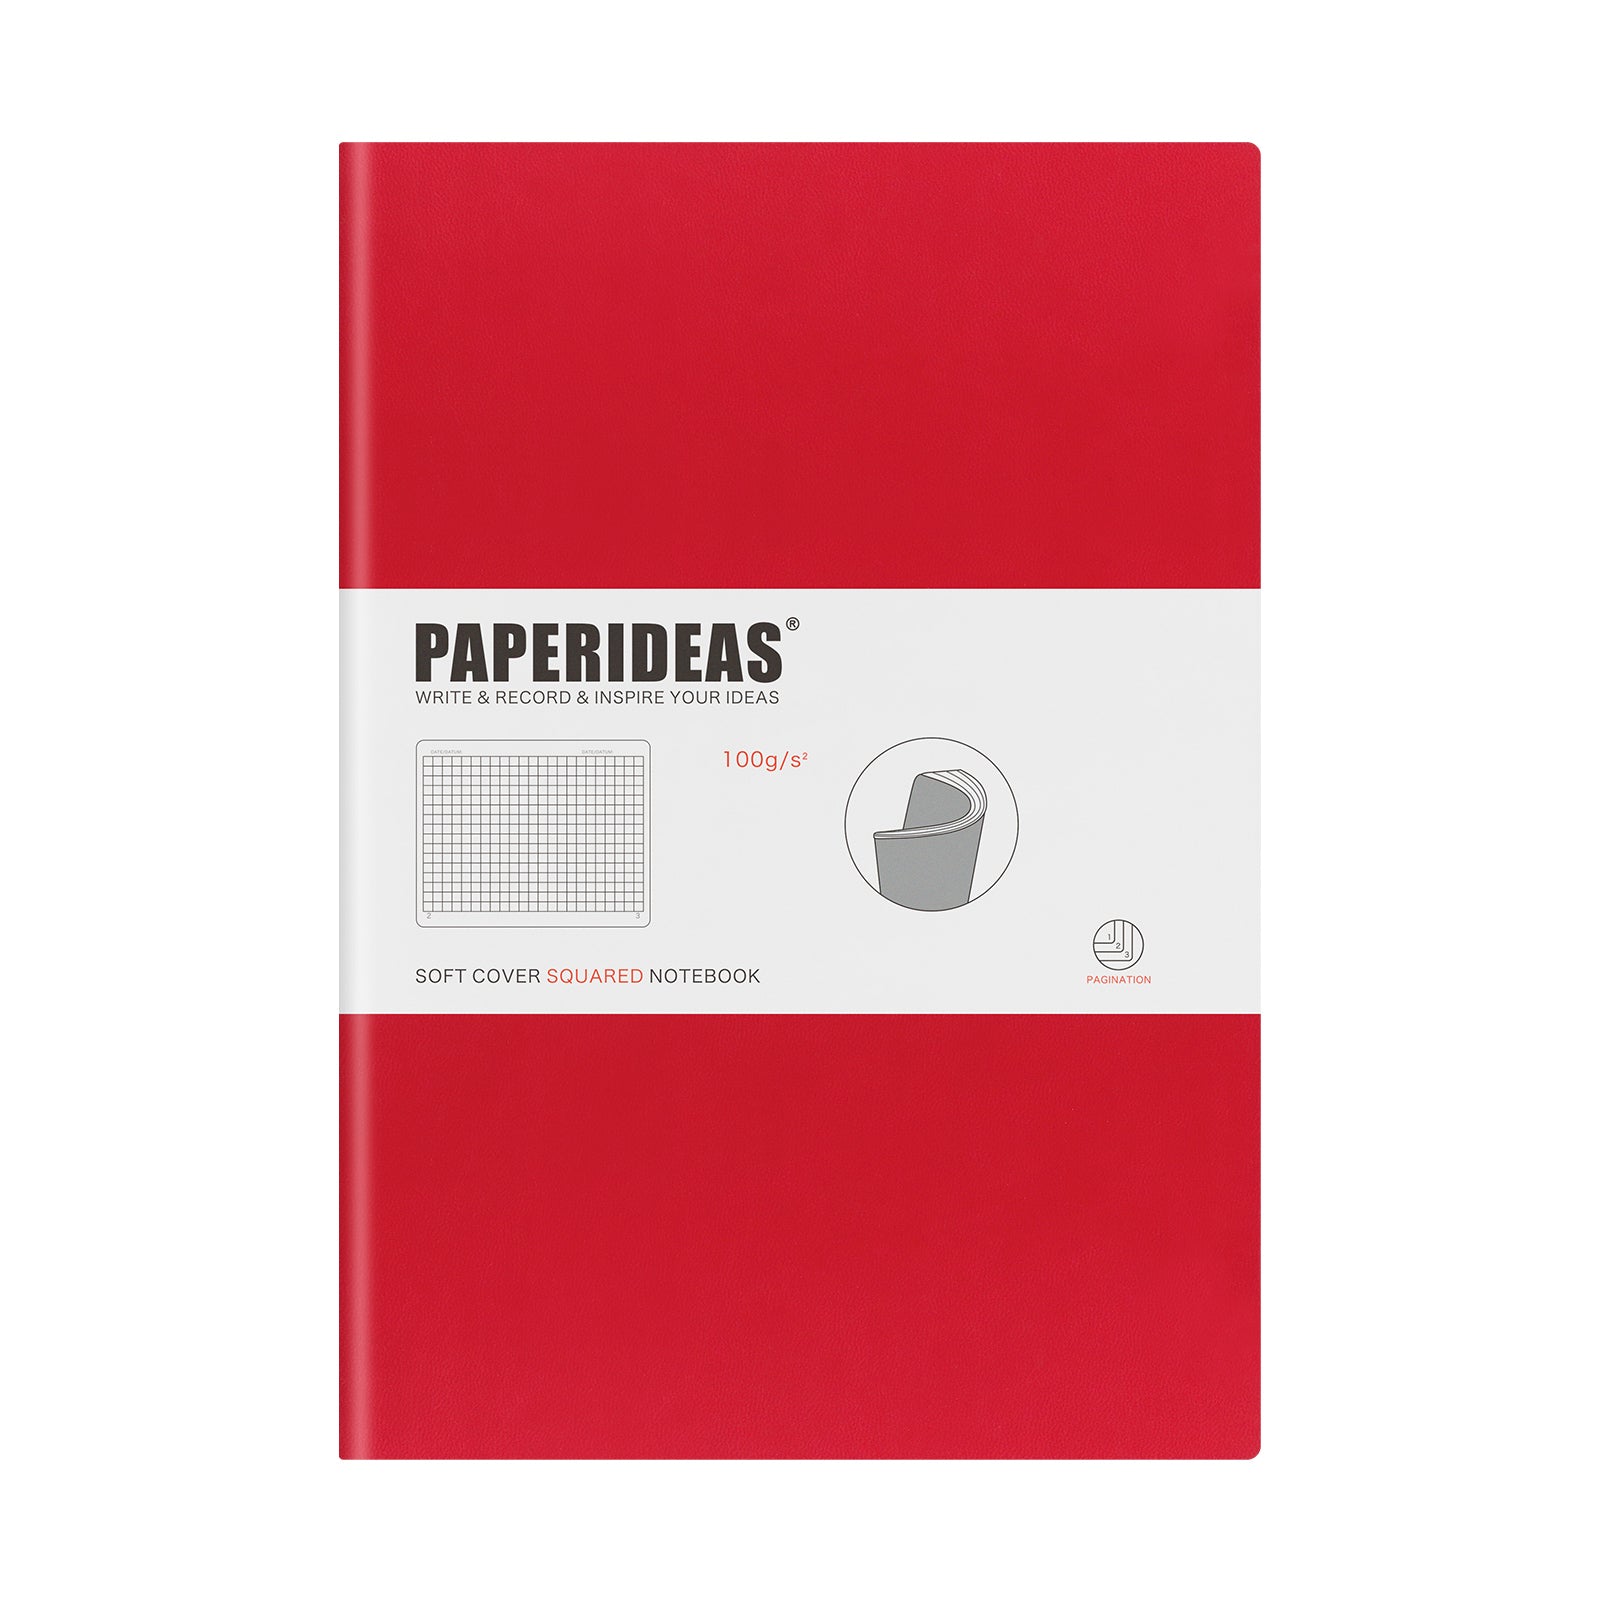 PAPERIDEAS ノート B5サイズ(横17.2×縦24.6 cm) レザー ソフトカバー 全ページ番号付き 横罫 方眼 ドット